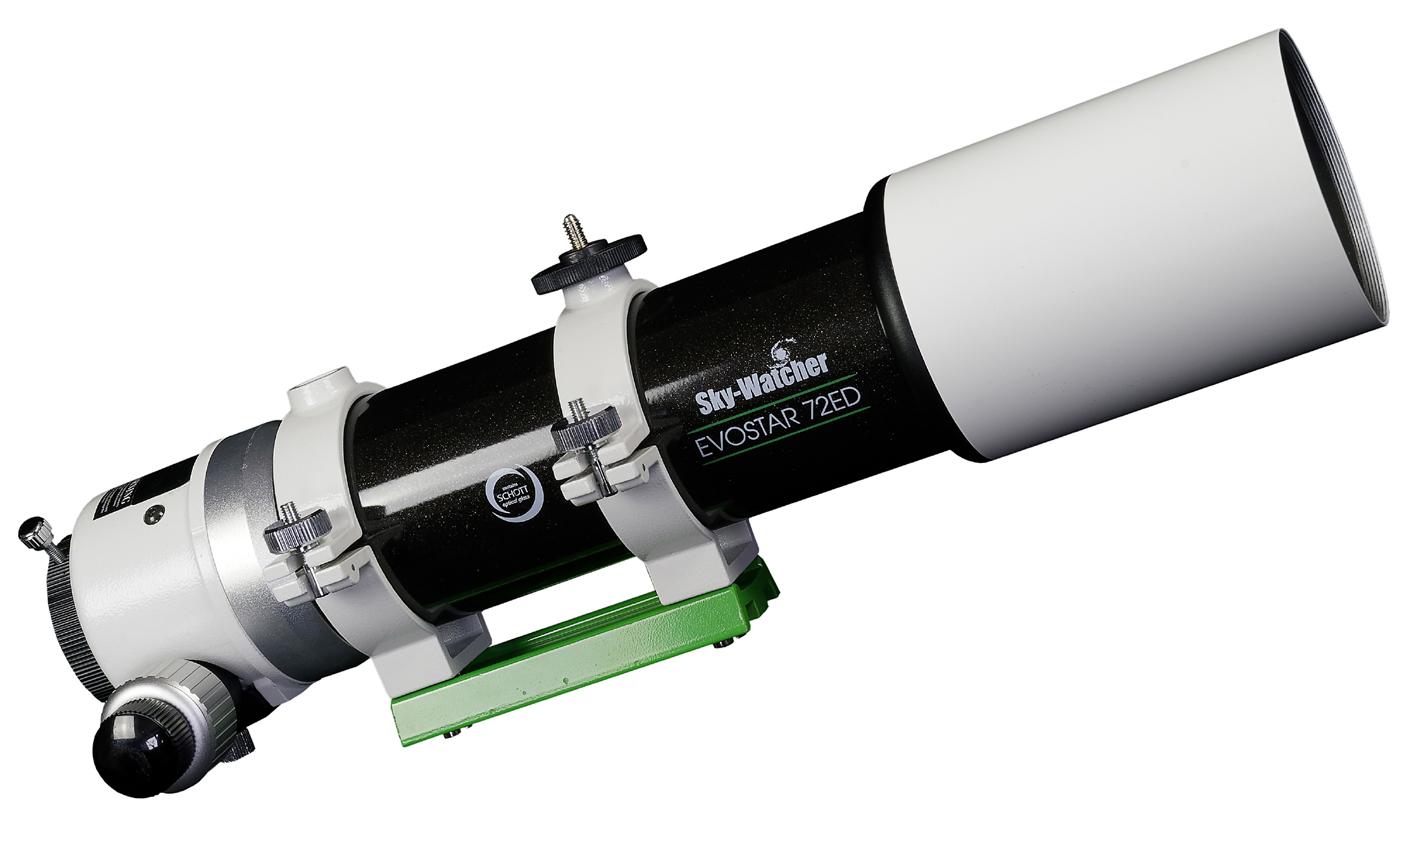   Tubo ottico Skywatcher 72 ED Rifrattore con doppietto in vetro Schott FPL-53  